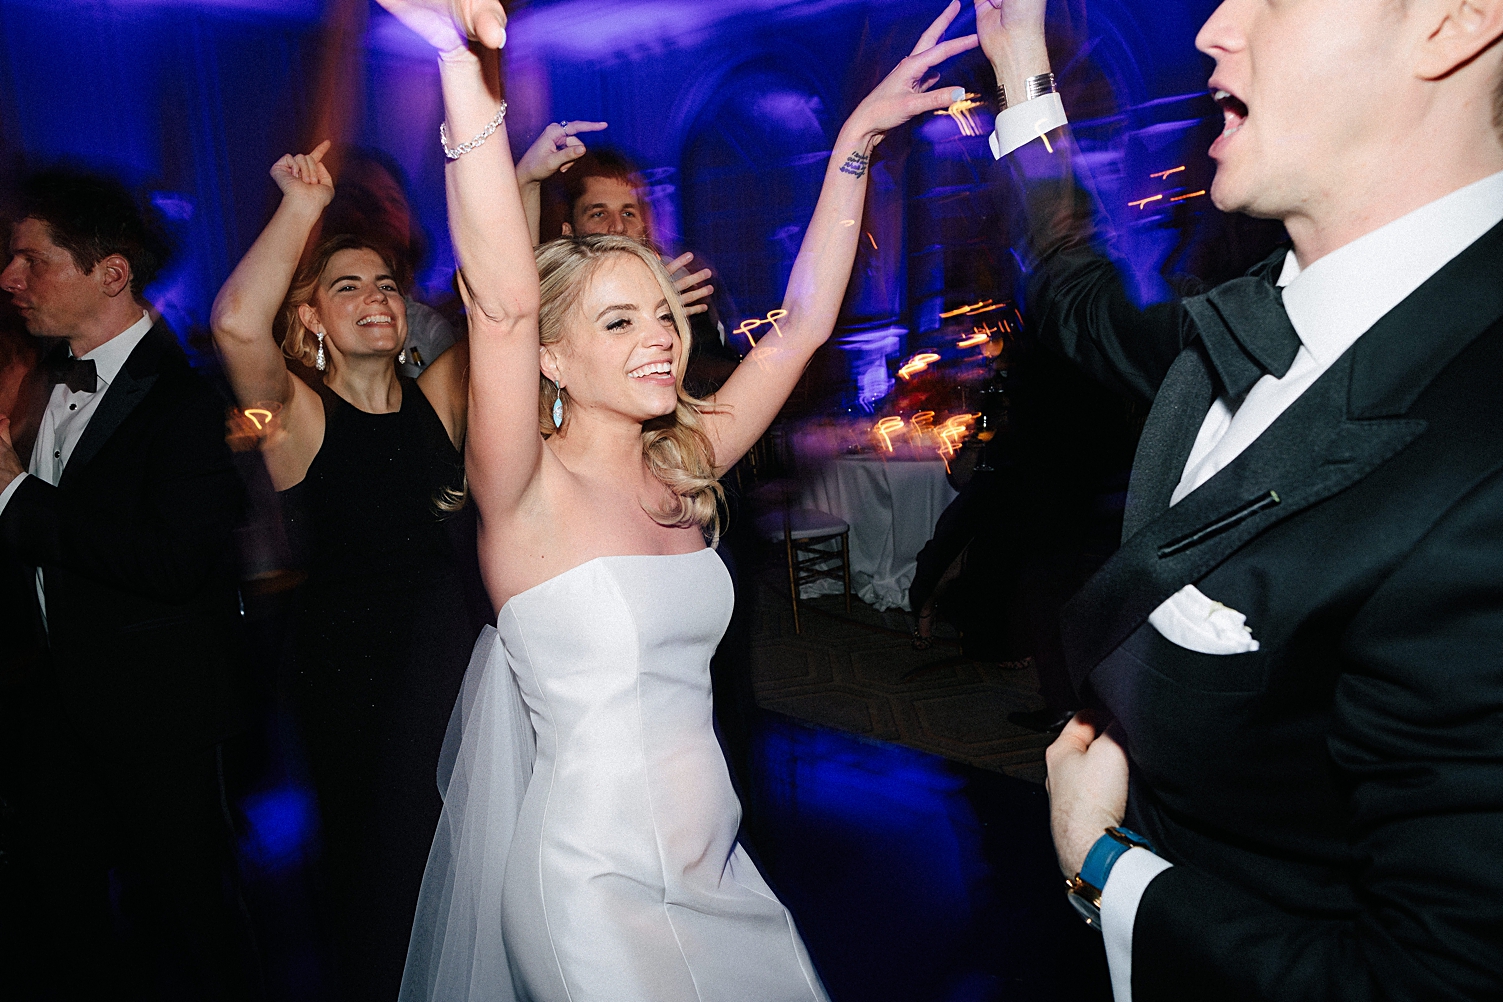 bride dancing at wedding reception party